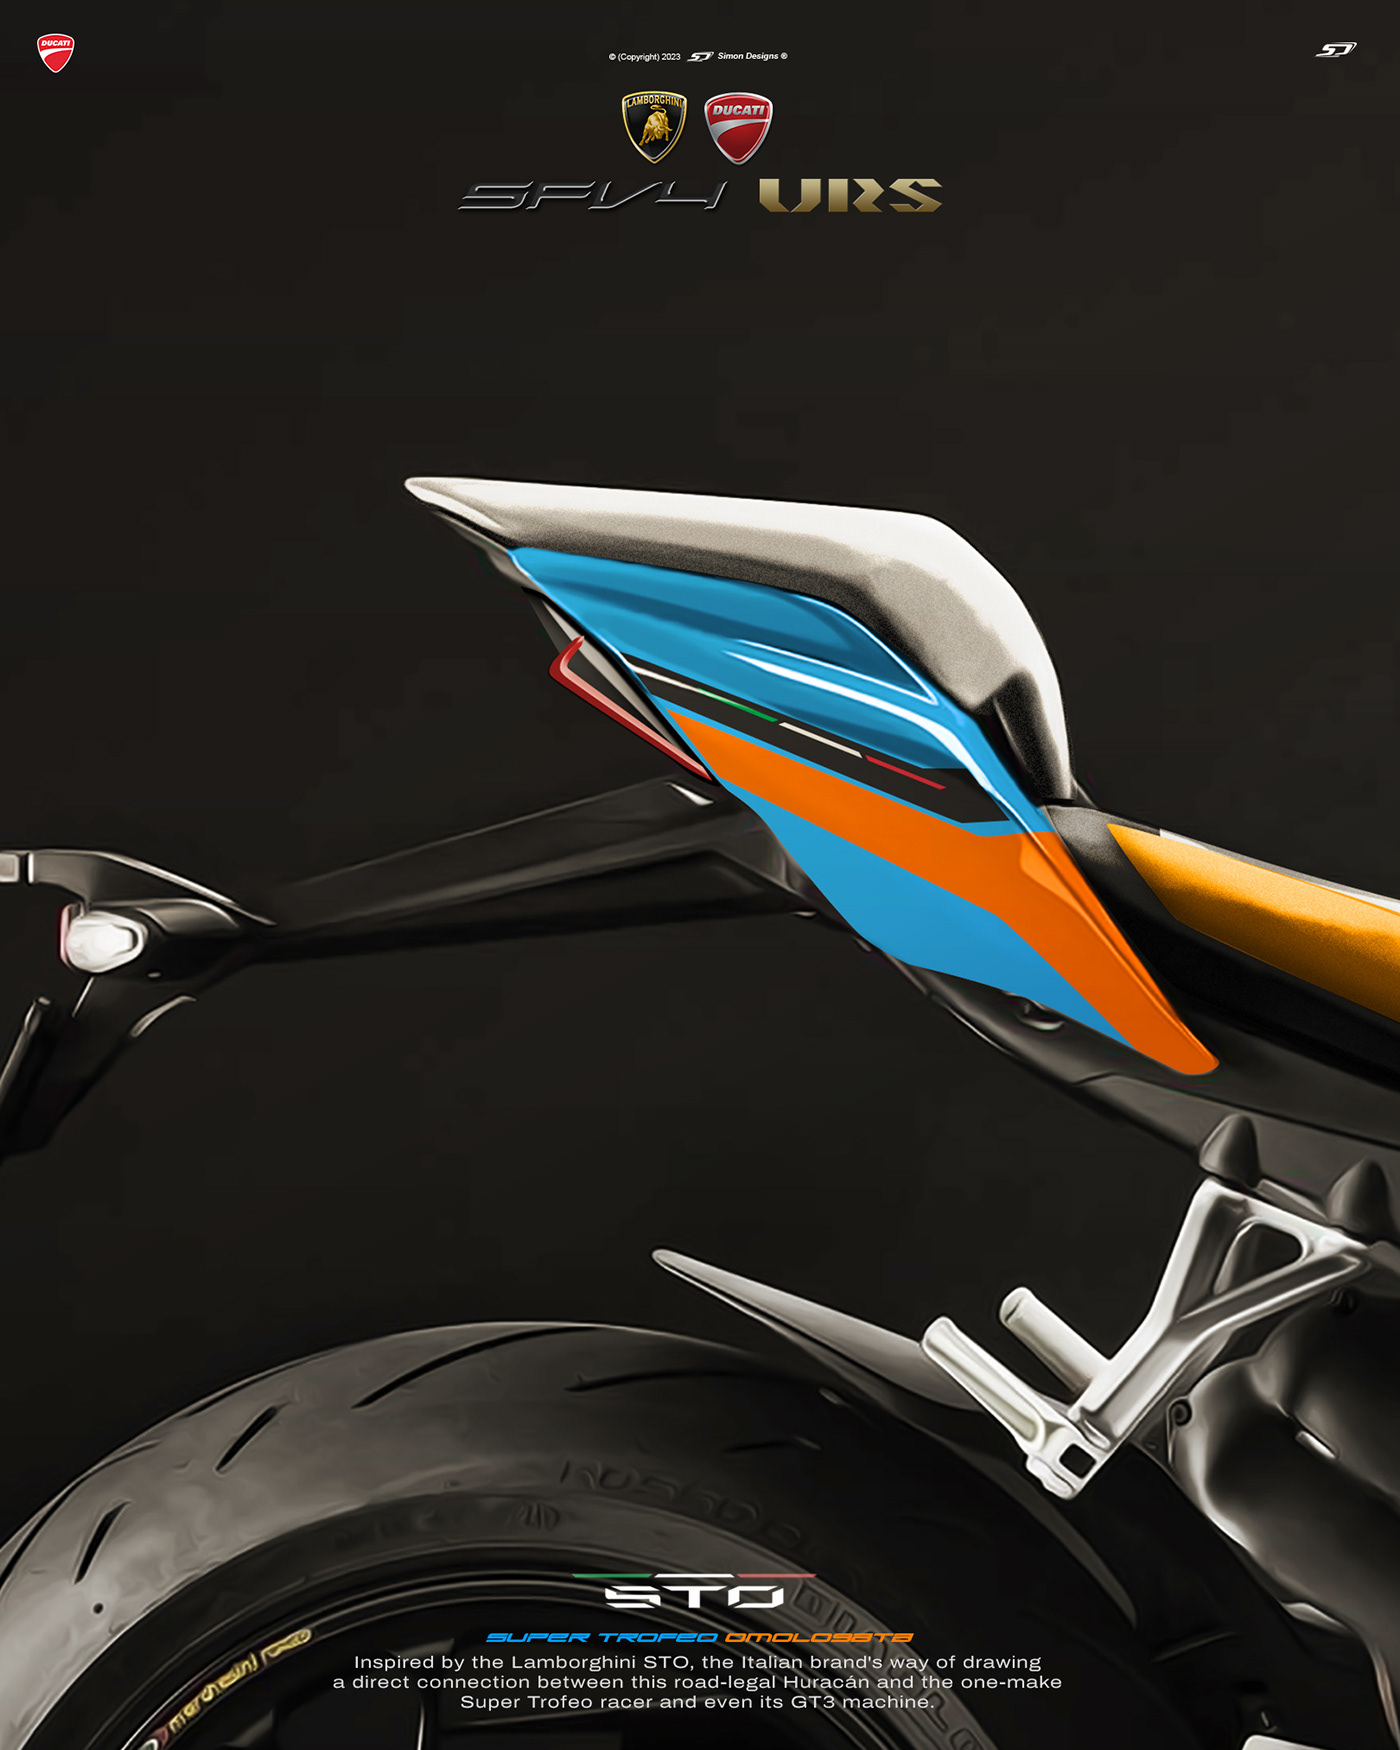 Simon Designs designer motorcycle design Automotive design Ducati lamborghini sto art ducati sfv4 lamborghini sto